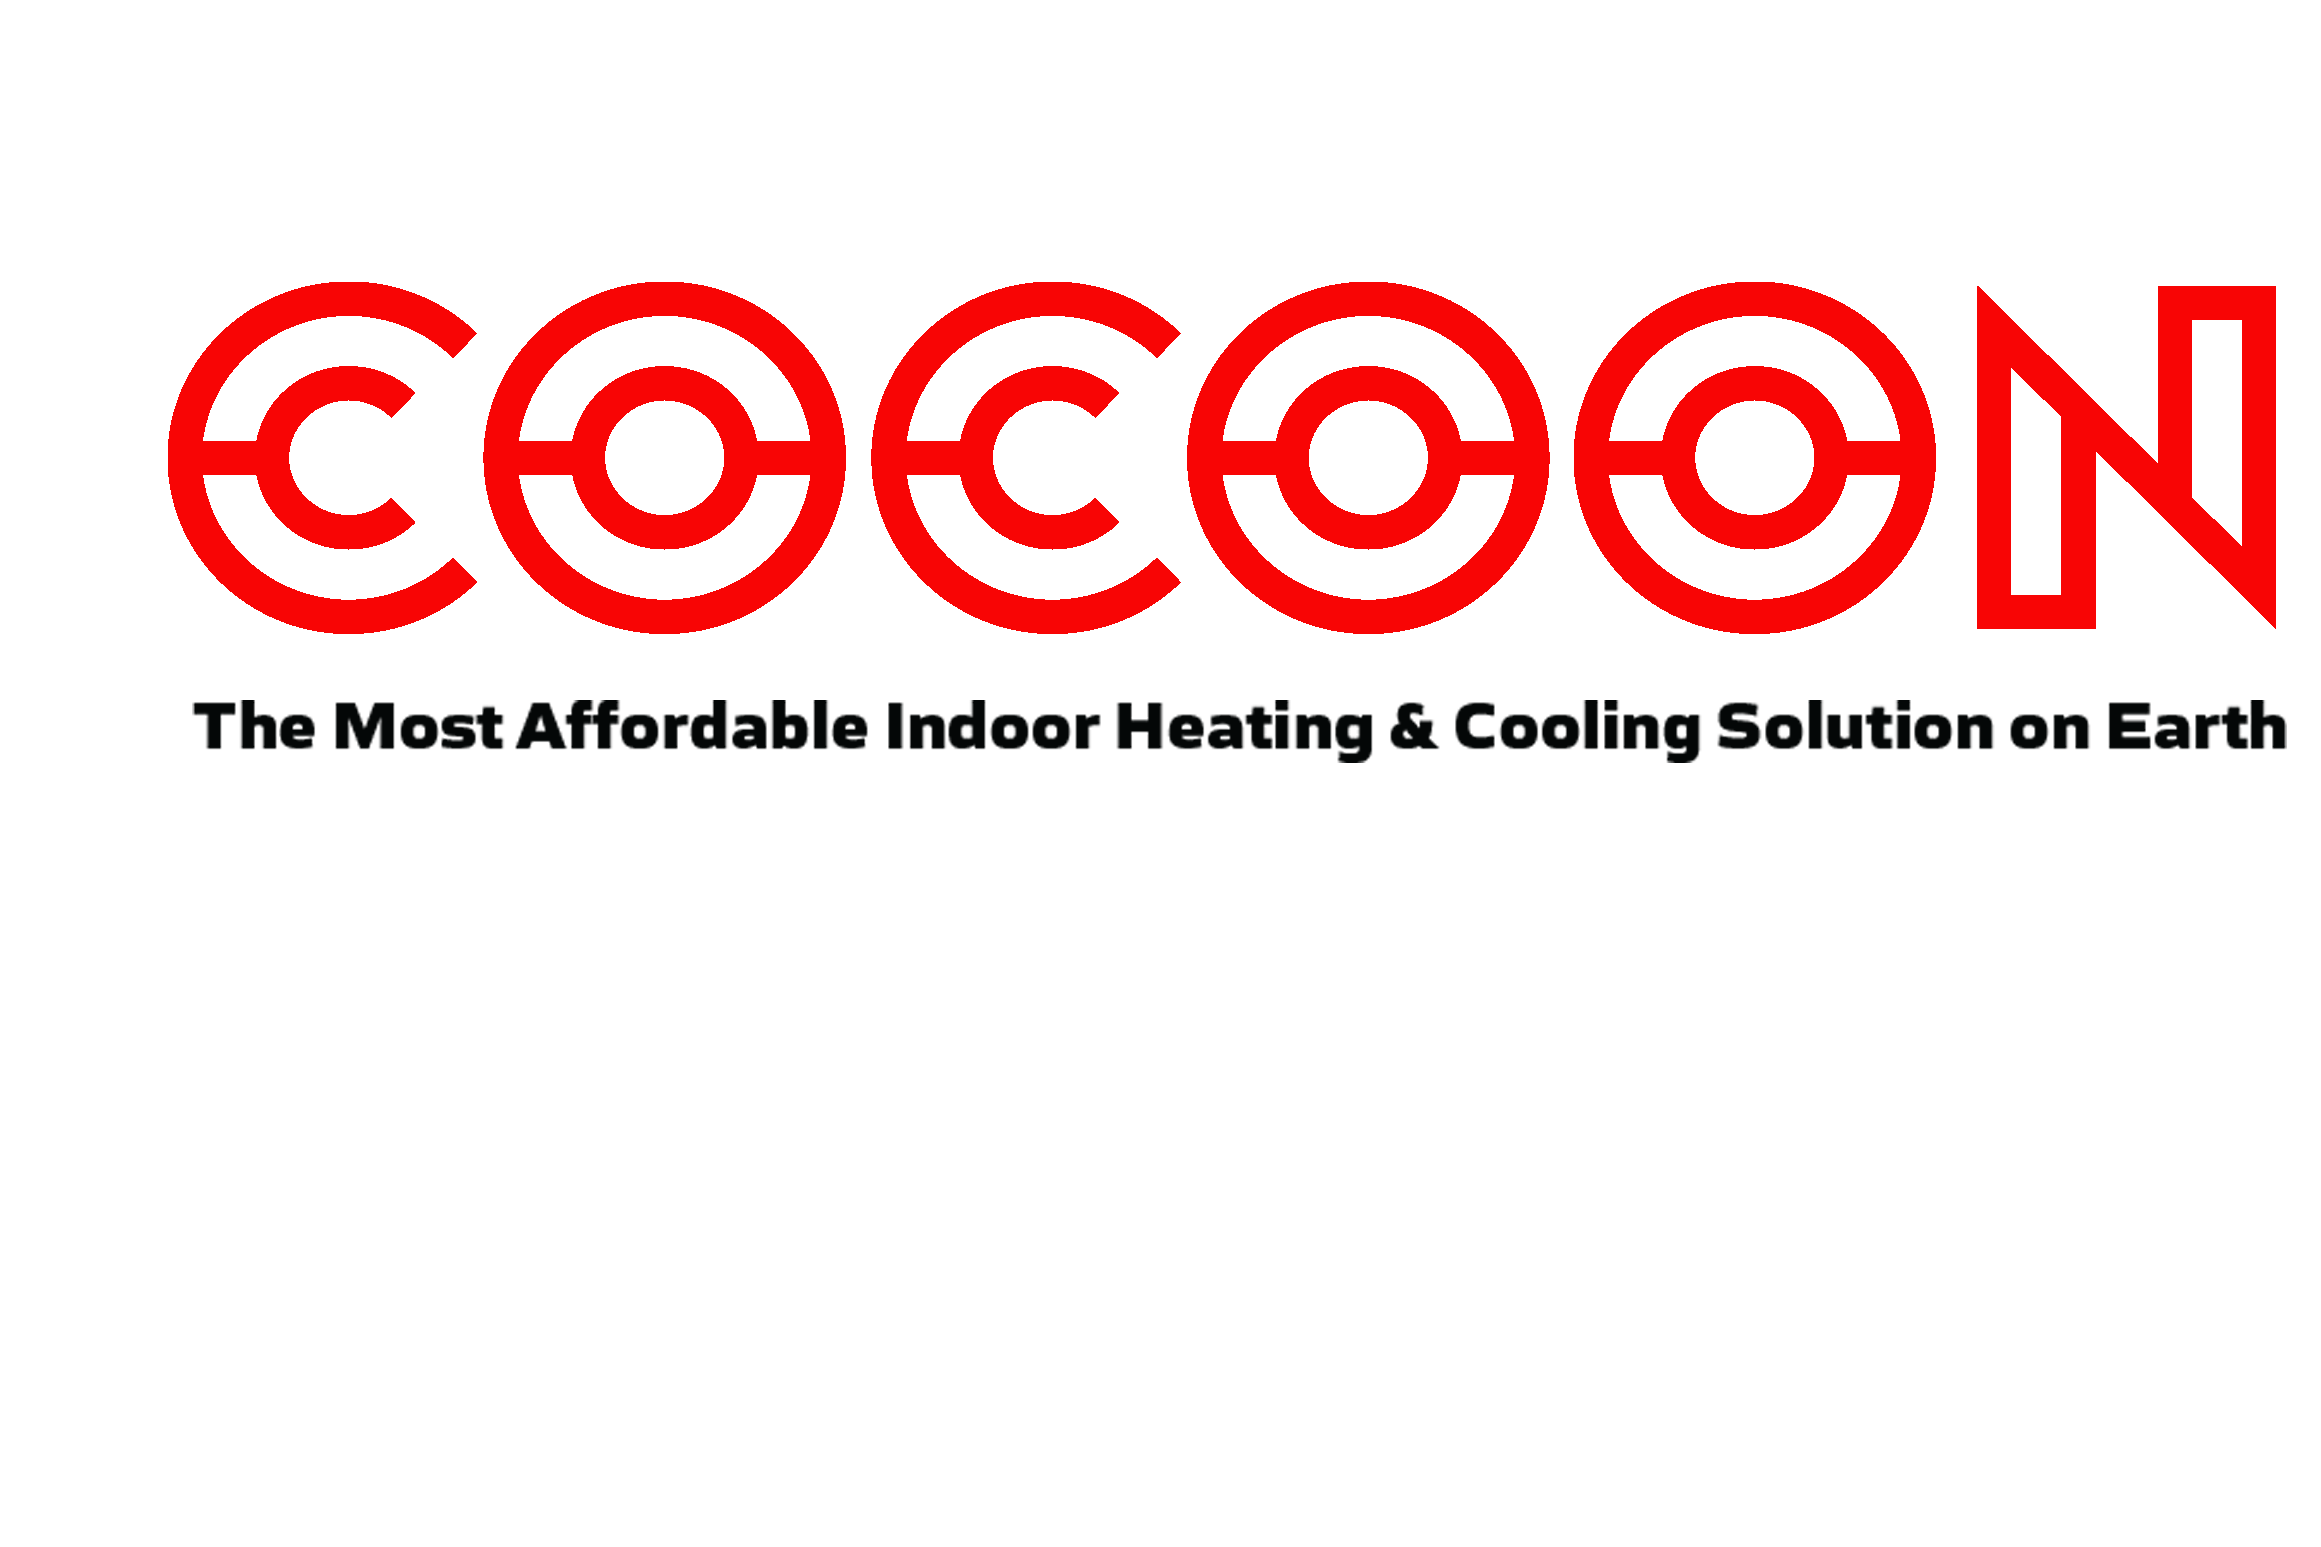 Cocoon HVAC (Thermasi, LLC) logo 